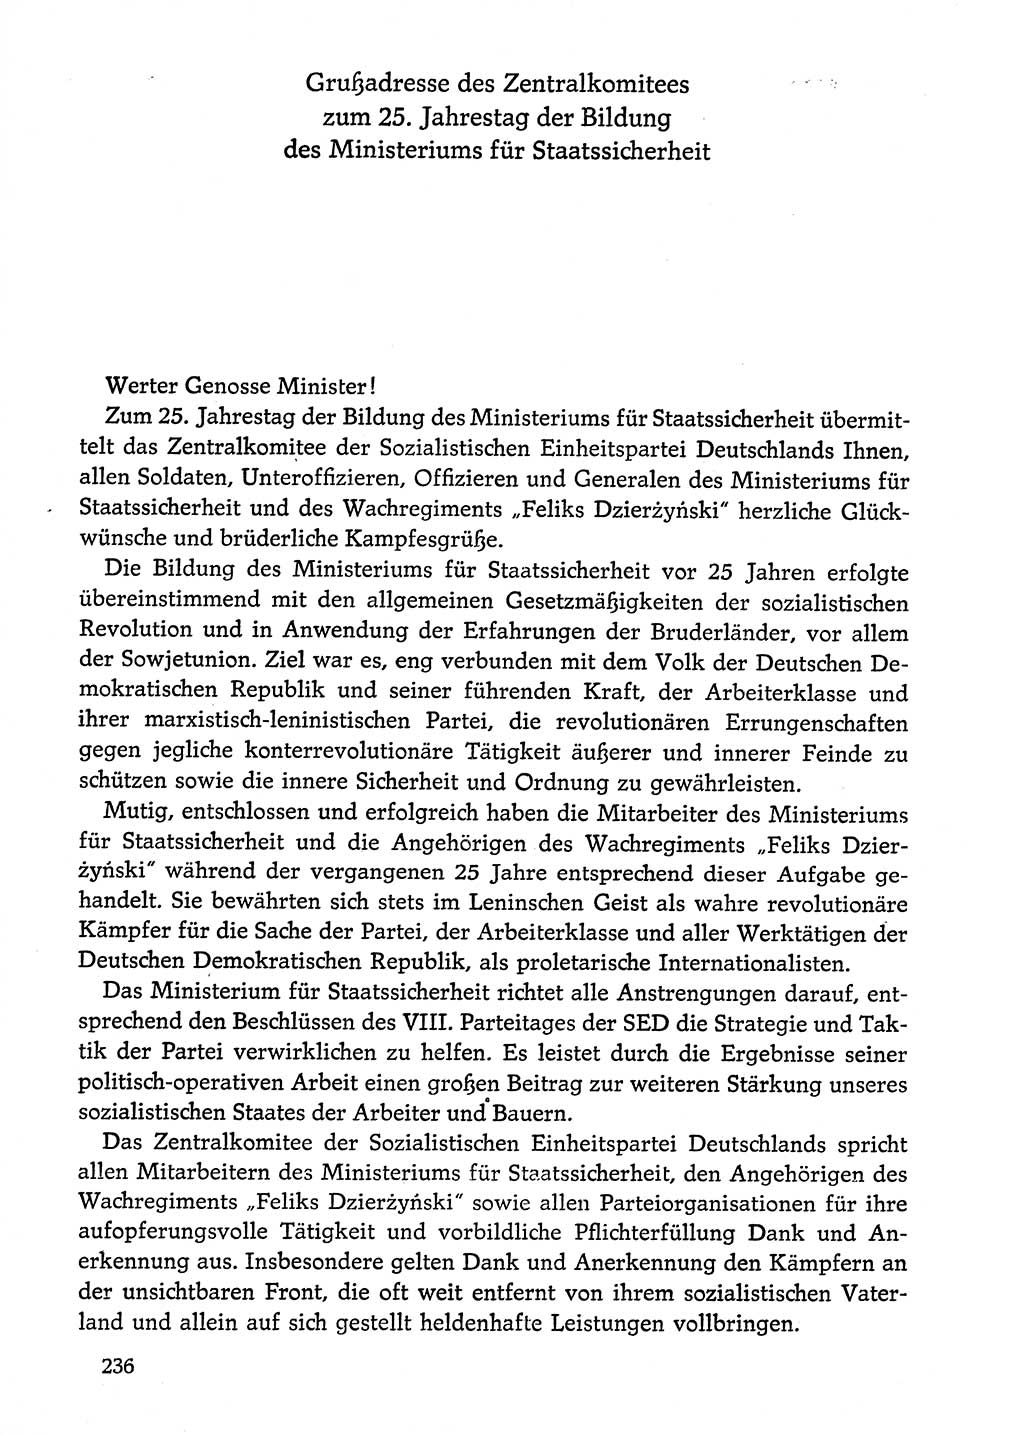 Dokumente der Sozialistischen Einheitspartei Deutschlands (SED) [Deutsche Demokratische Republik (DDR)] 1974-1975, Seite 236 (Dok. SED DDR 1978, Bd. ⅩⅤ, S. 236)